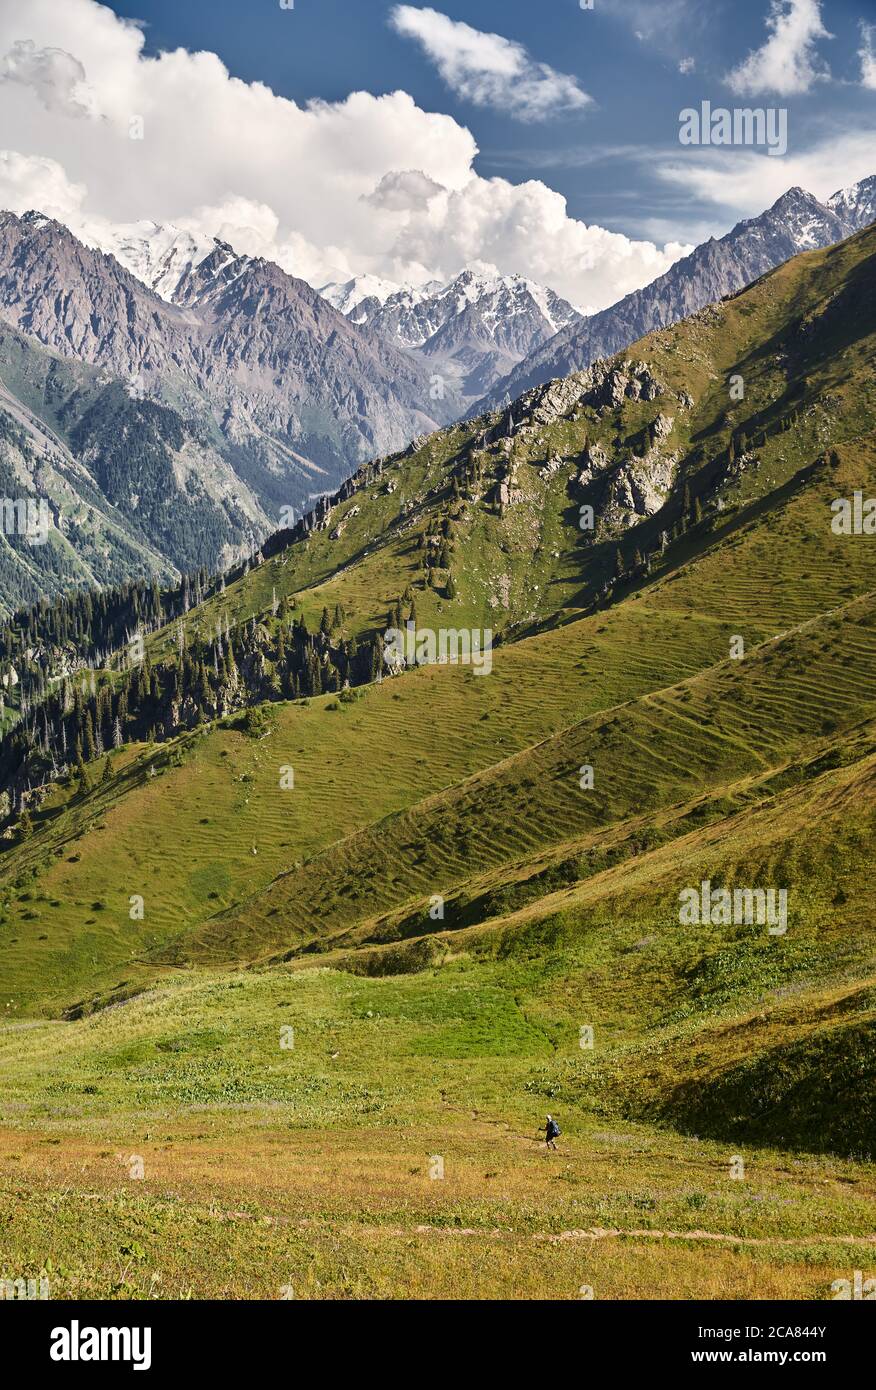 Kleine touristische Wanderung auf grünen Hügel im Bergtal mit hohen schneebedeckten Gipfeln Stockfoto